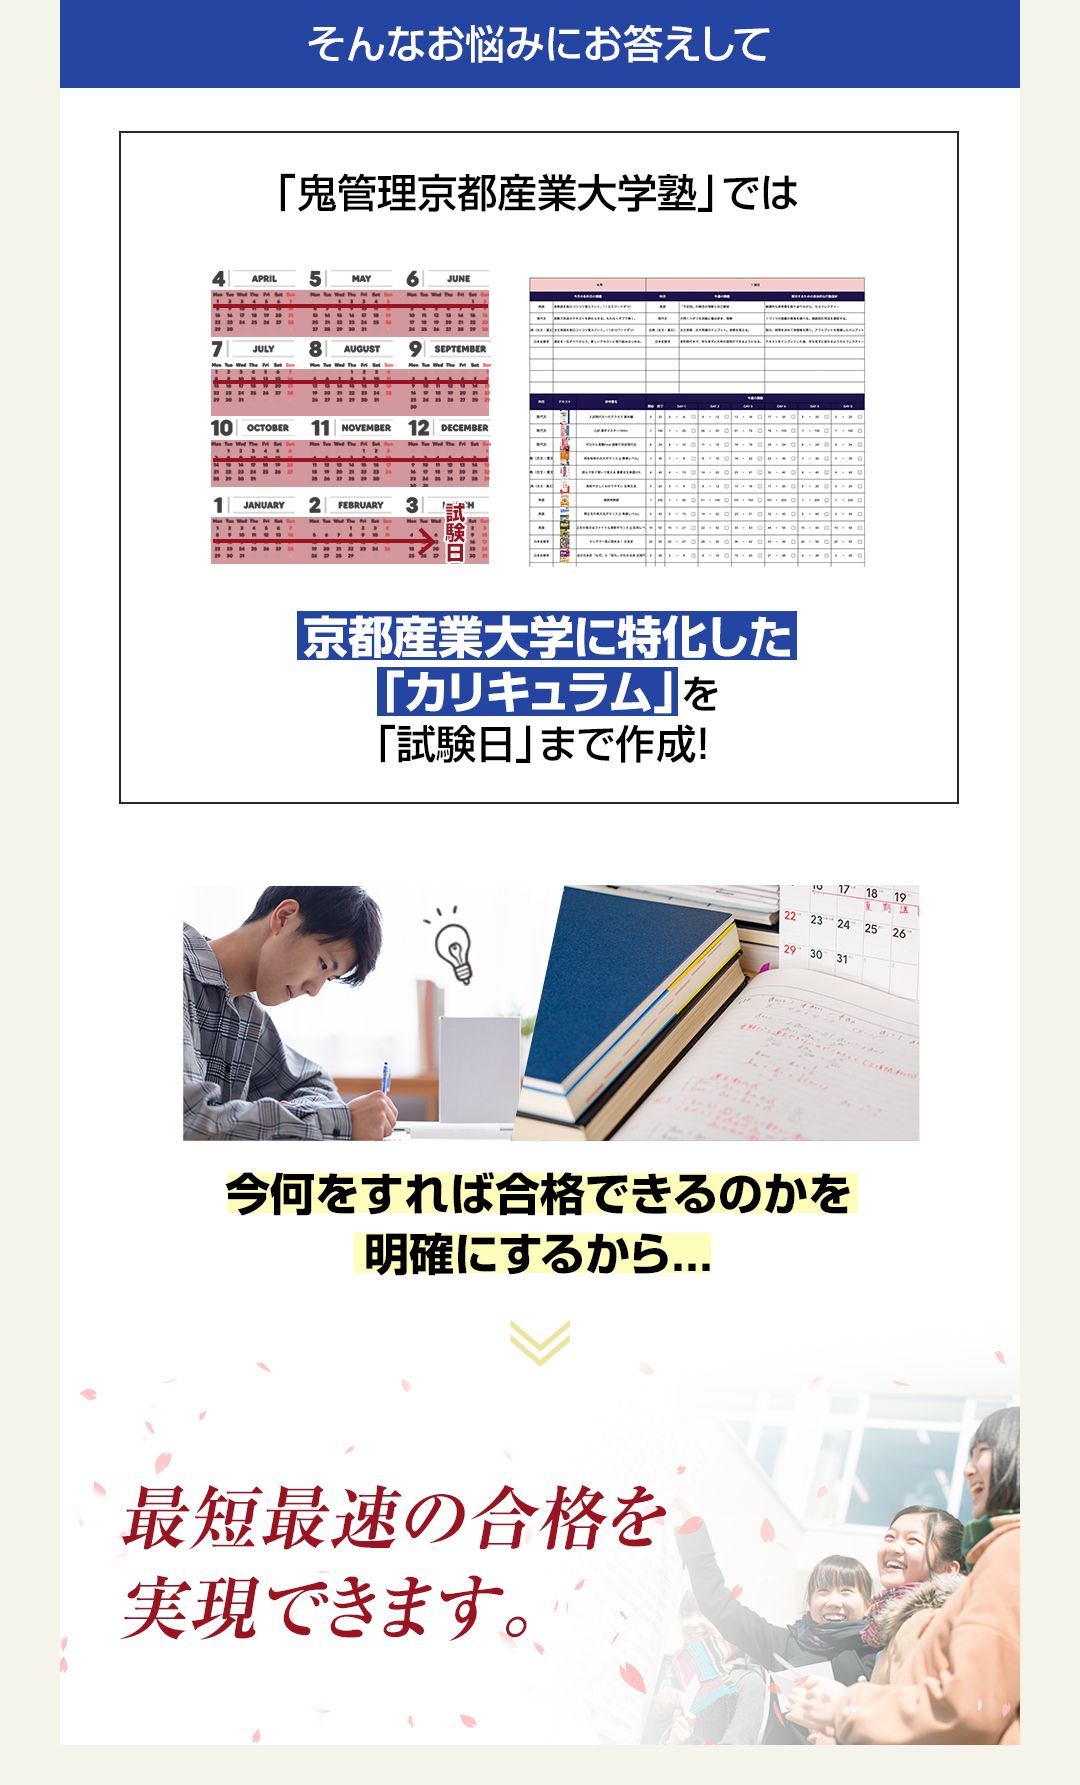 「鬼管理京都産業大学塾」では京都産業大学に特化した「カリキュラム」を「試験日」まで作成